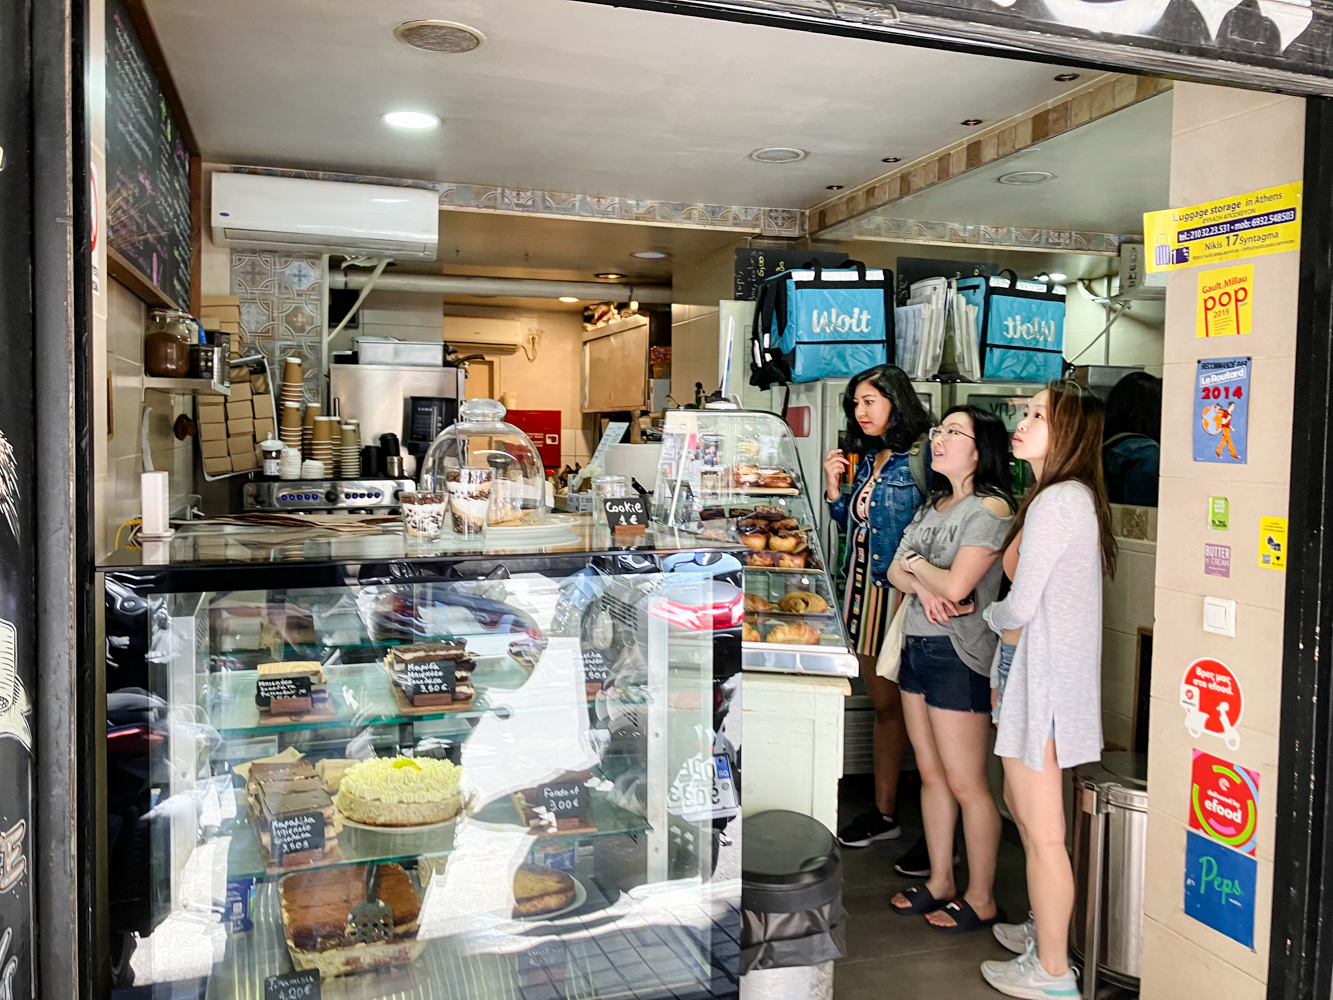 Trois touristes asiatiques sur le point de commander à manger © Globe Reporters 